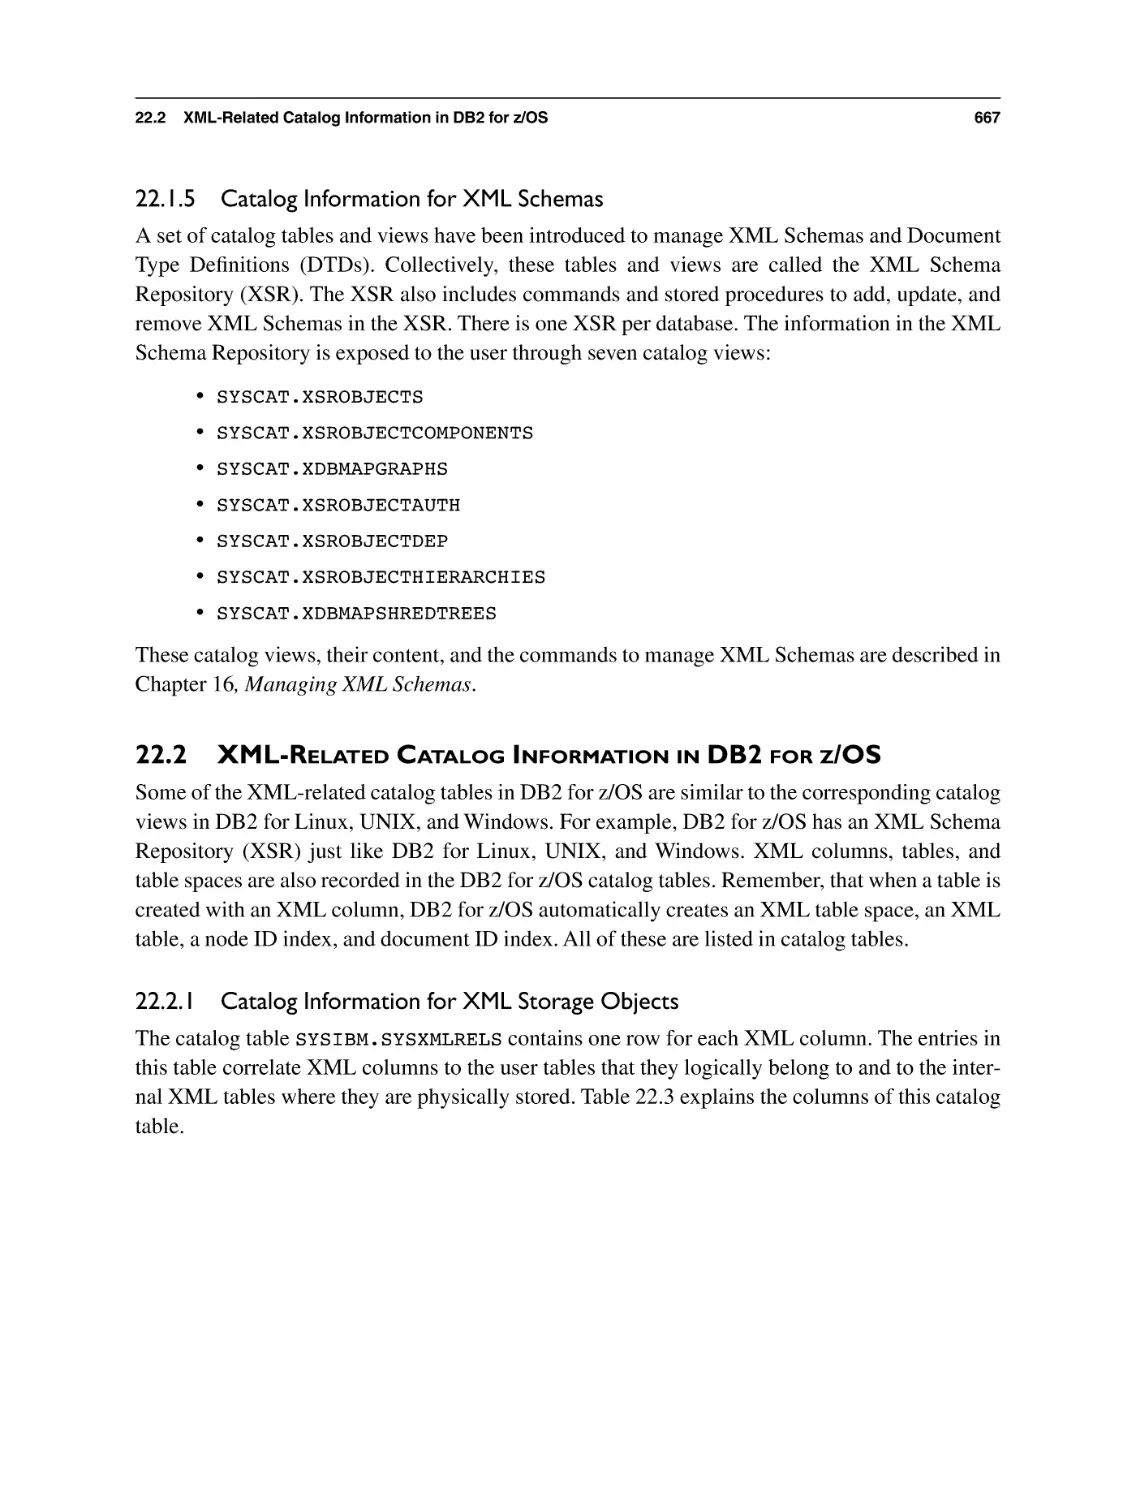 22.1.5 Catalog Information for XML Schemas
22.2 XML-Related Catalog Information in DB2 for z/OS
22.2.1 Catalog Information for XML Storage Objects